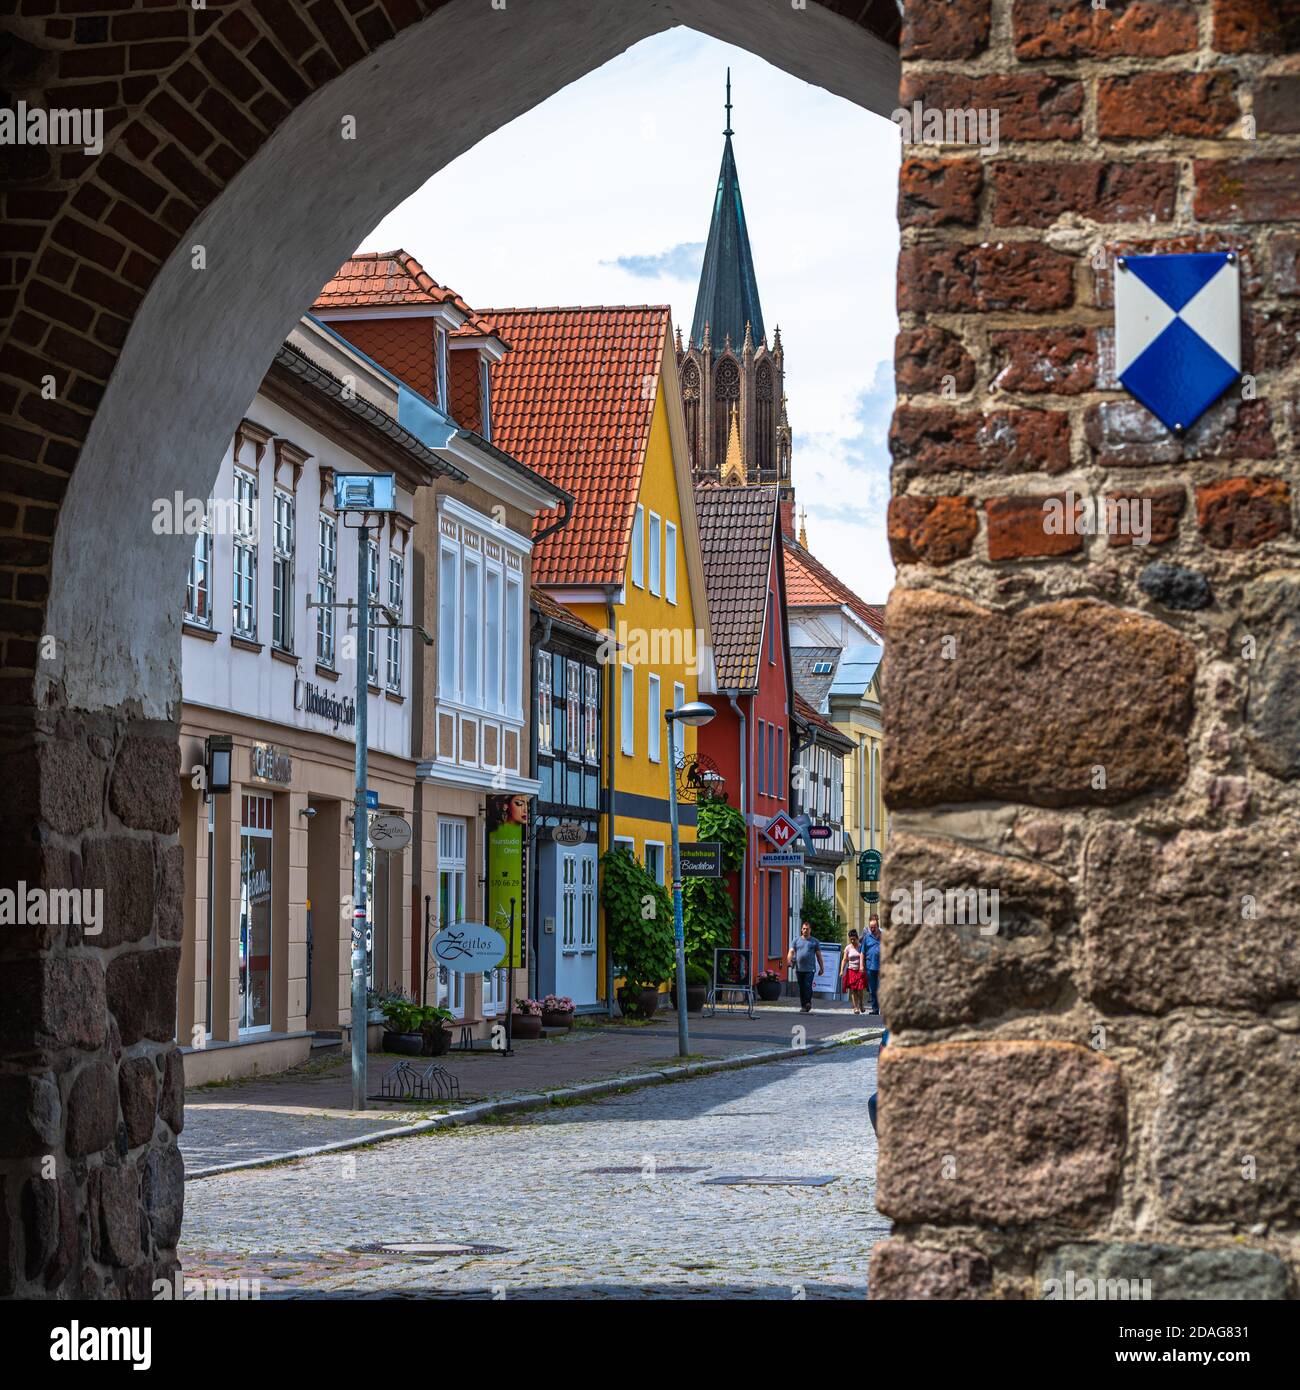 Neubrandenburg, Stadtansichten, Altstadt: Häuser und Straßen Stock Photo